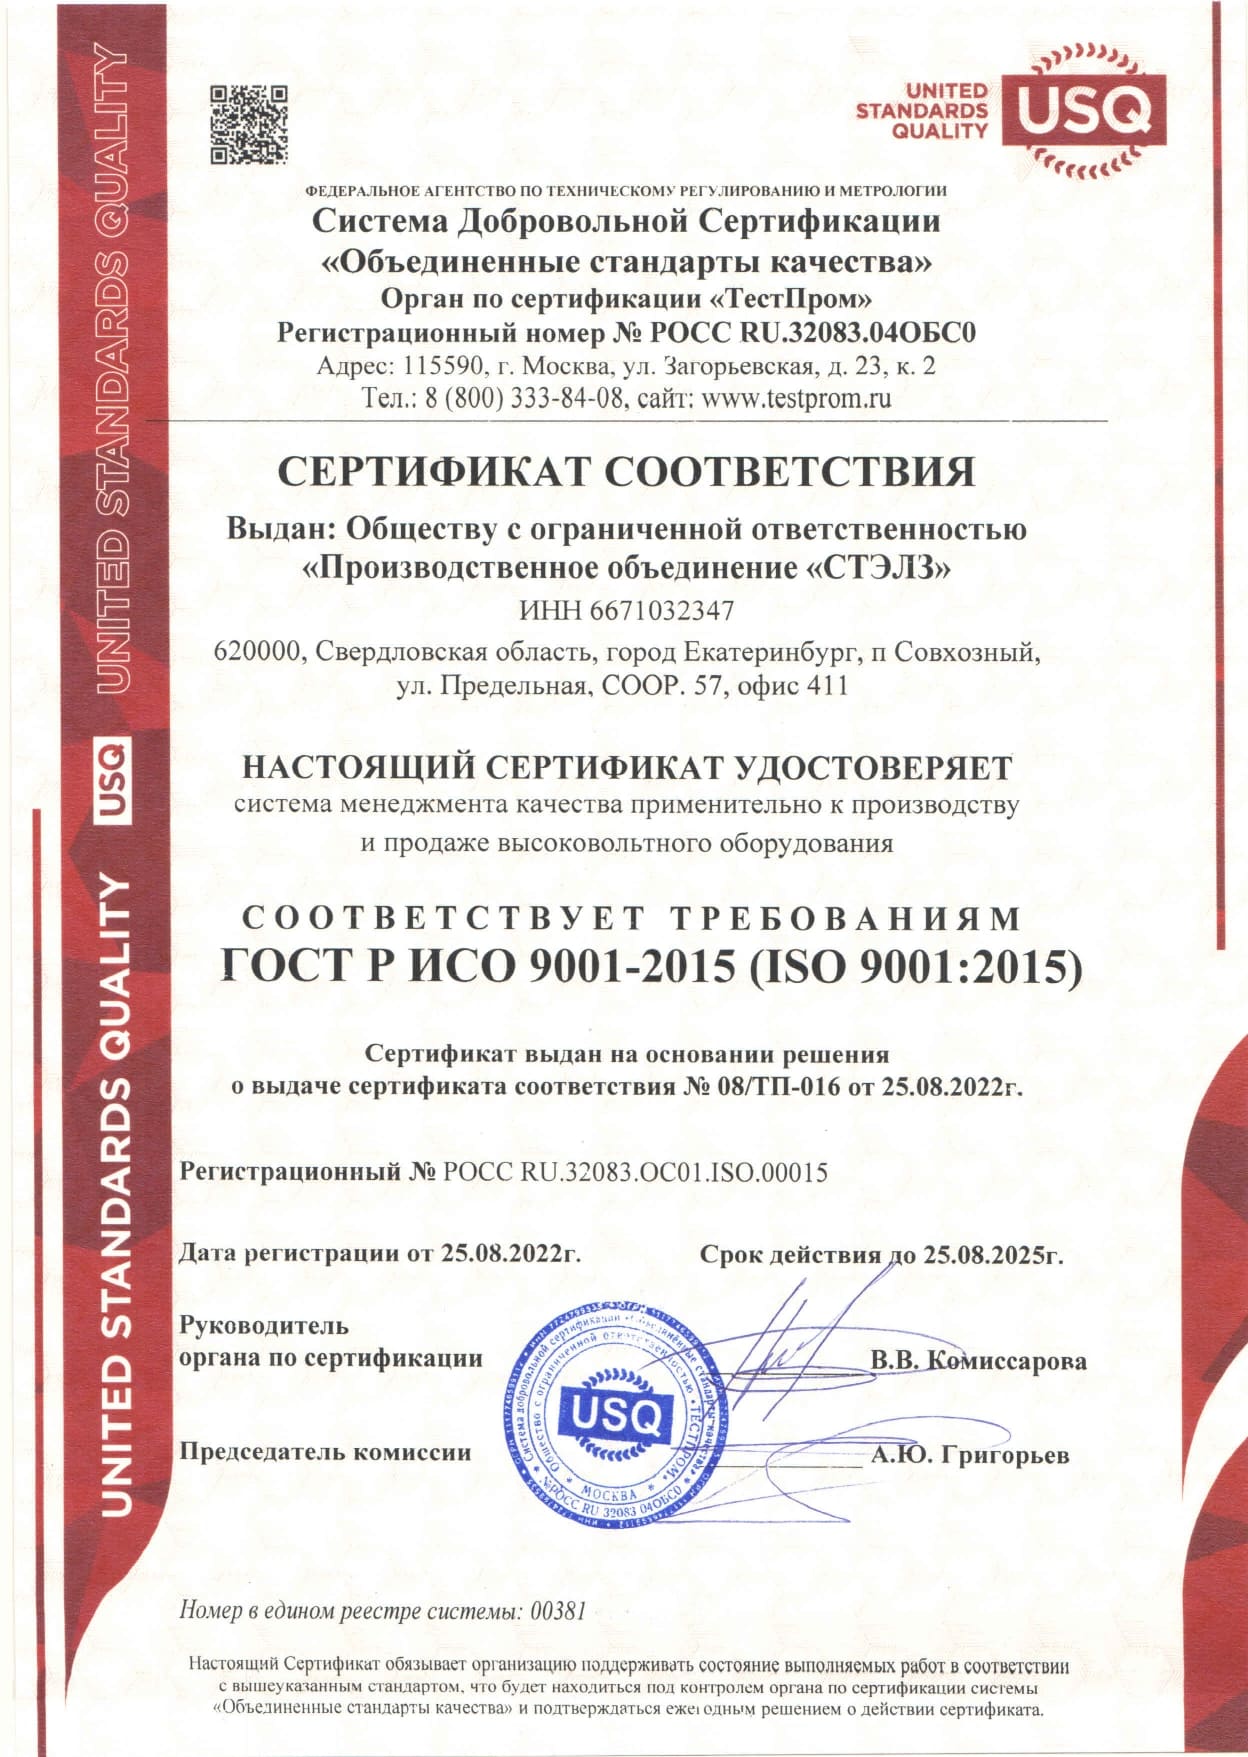 Сертификат СТЭЛЗ на соответствие системы менеджмента качества